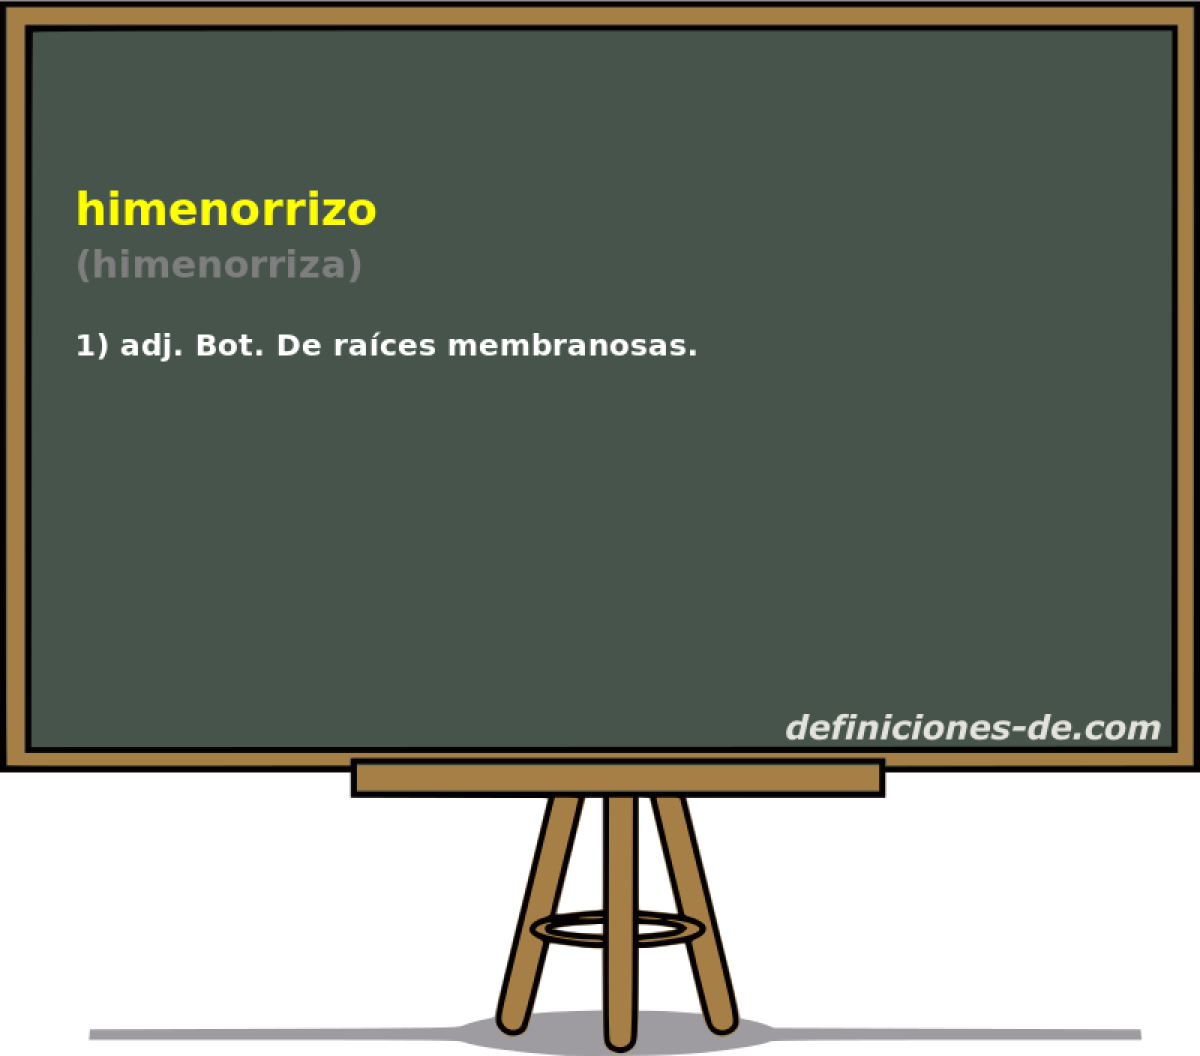 himenorrizo (himenorriza)